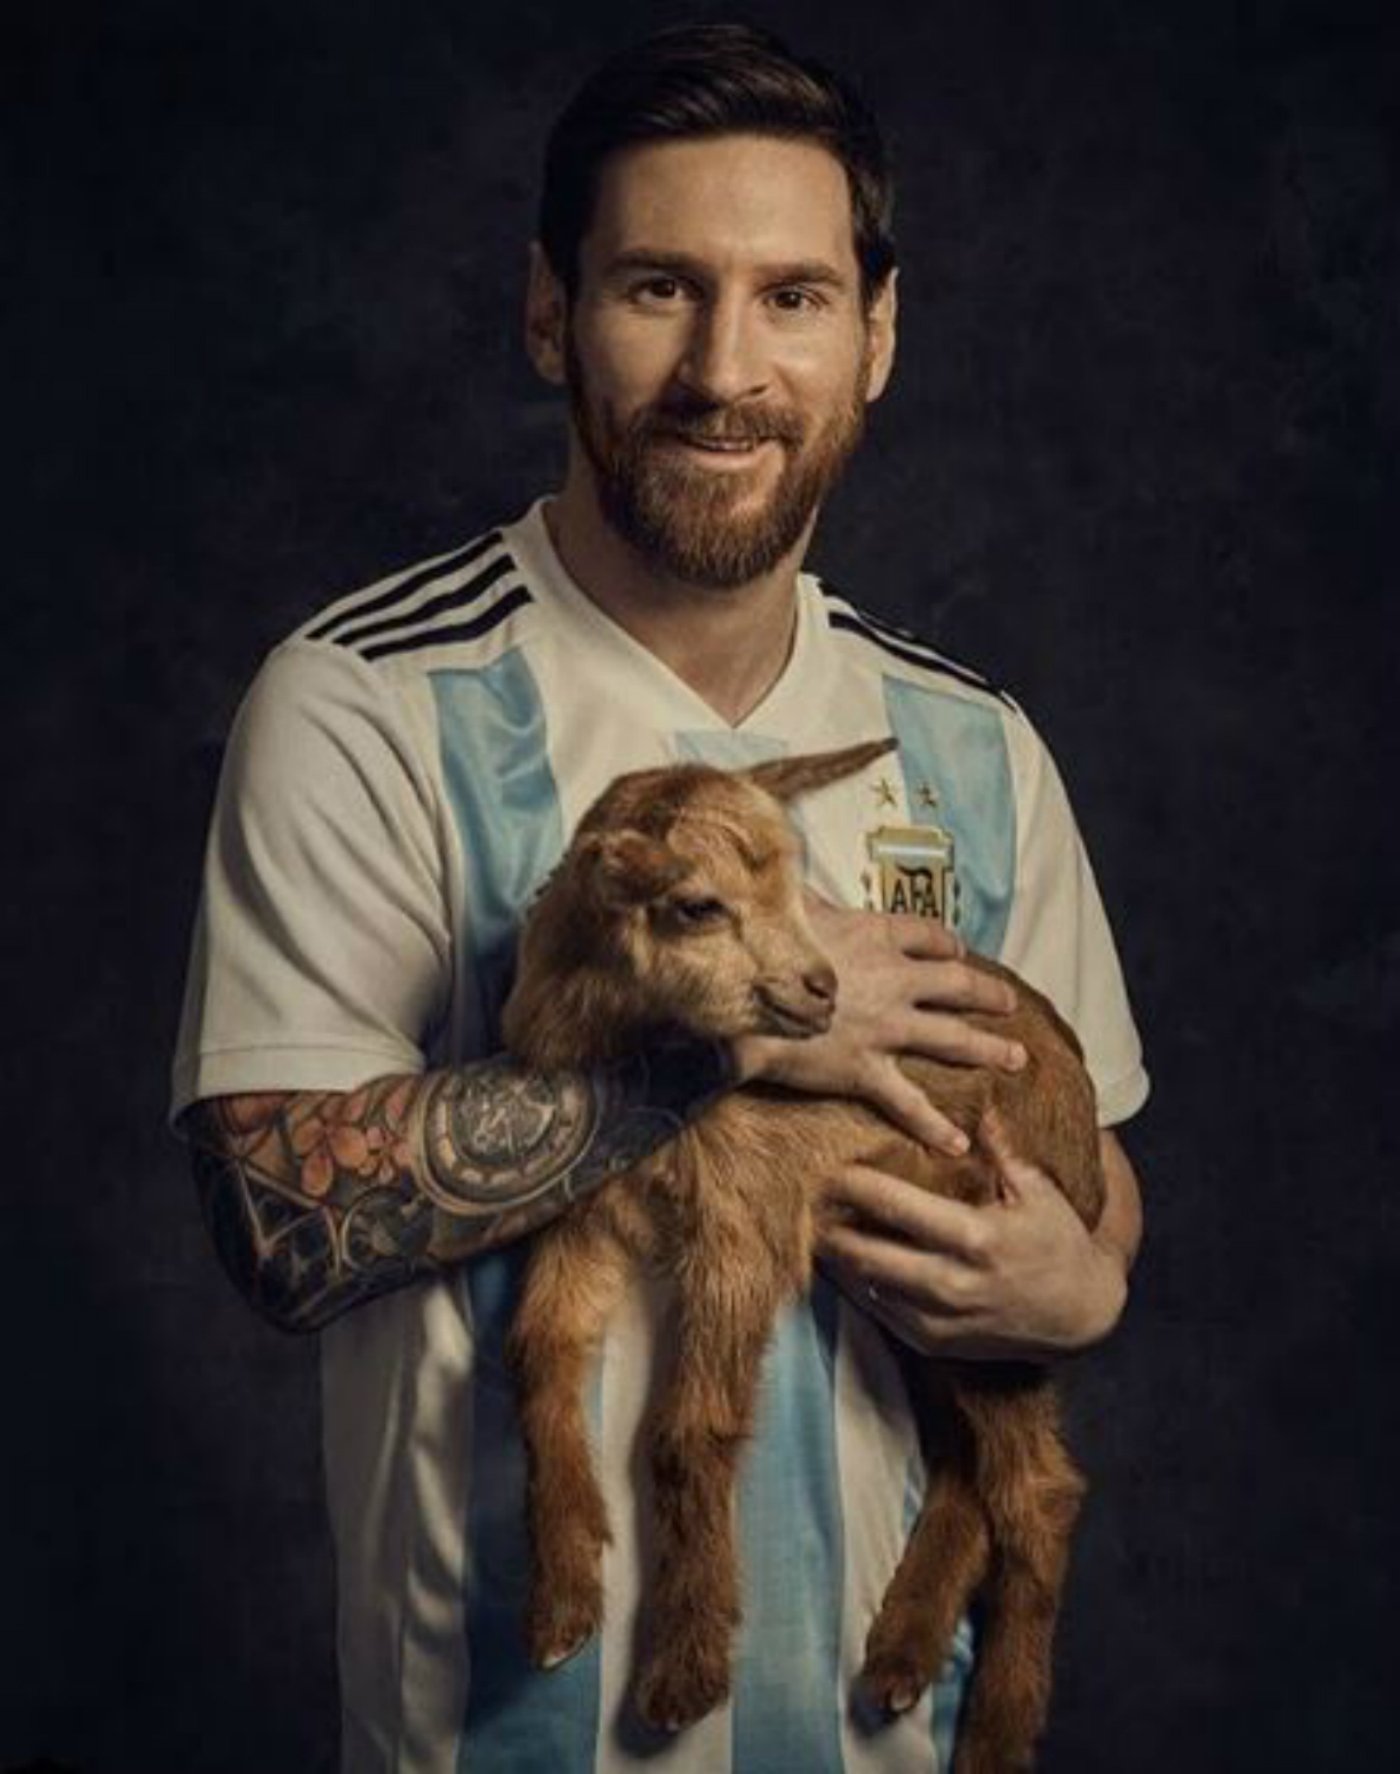 ¿Por qué una revista americana fotografía a Messi al lado de una cabra?